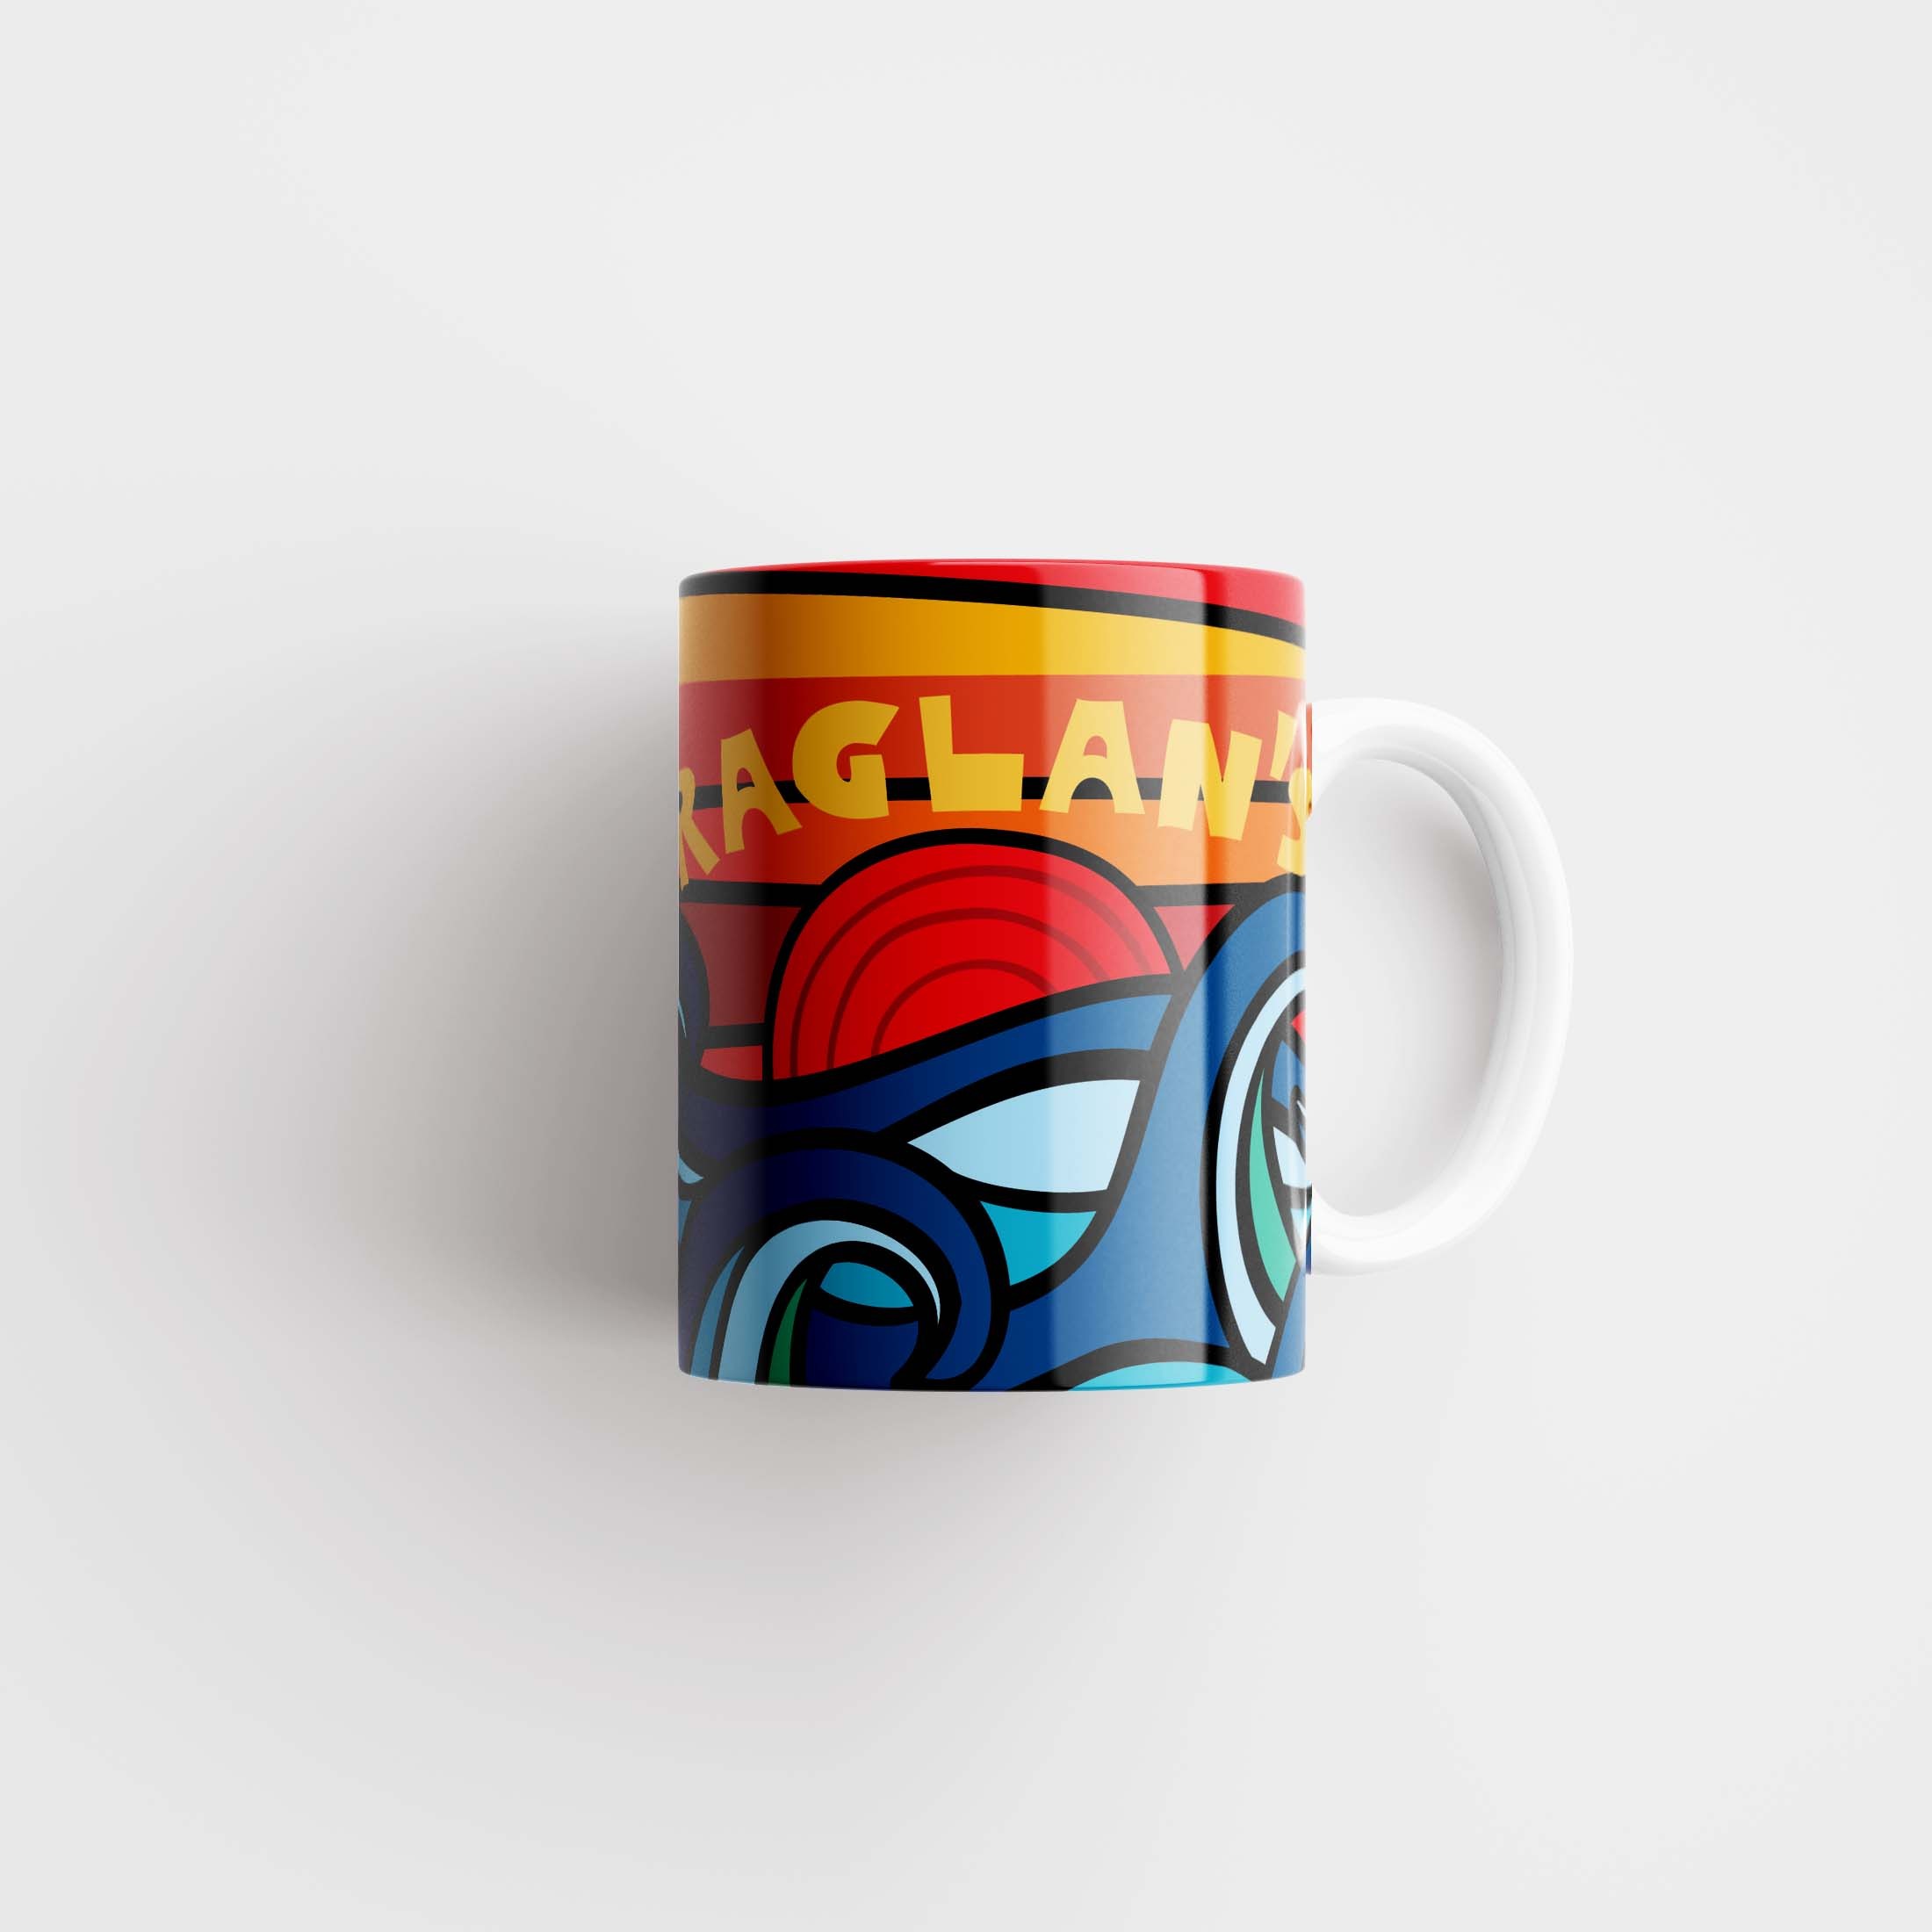 Raglan’s Mug #1